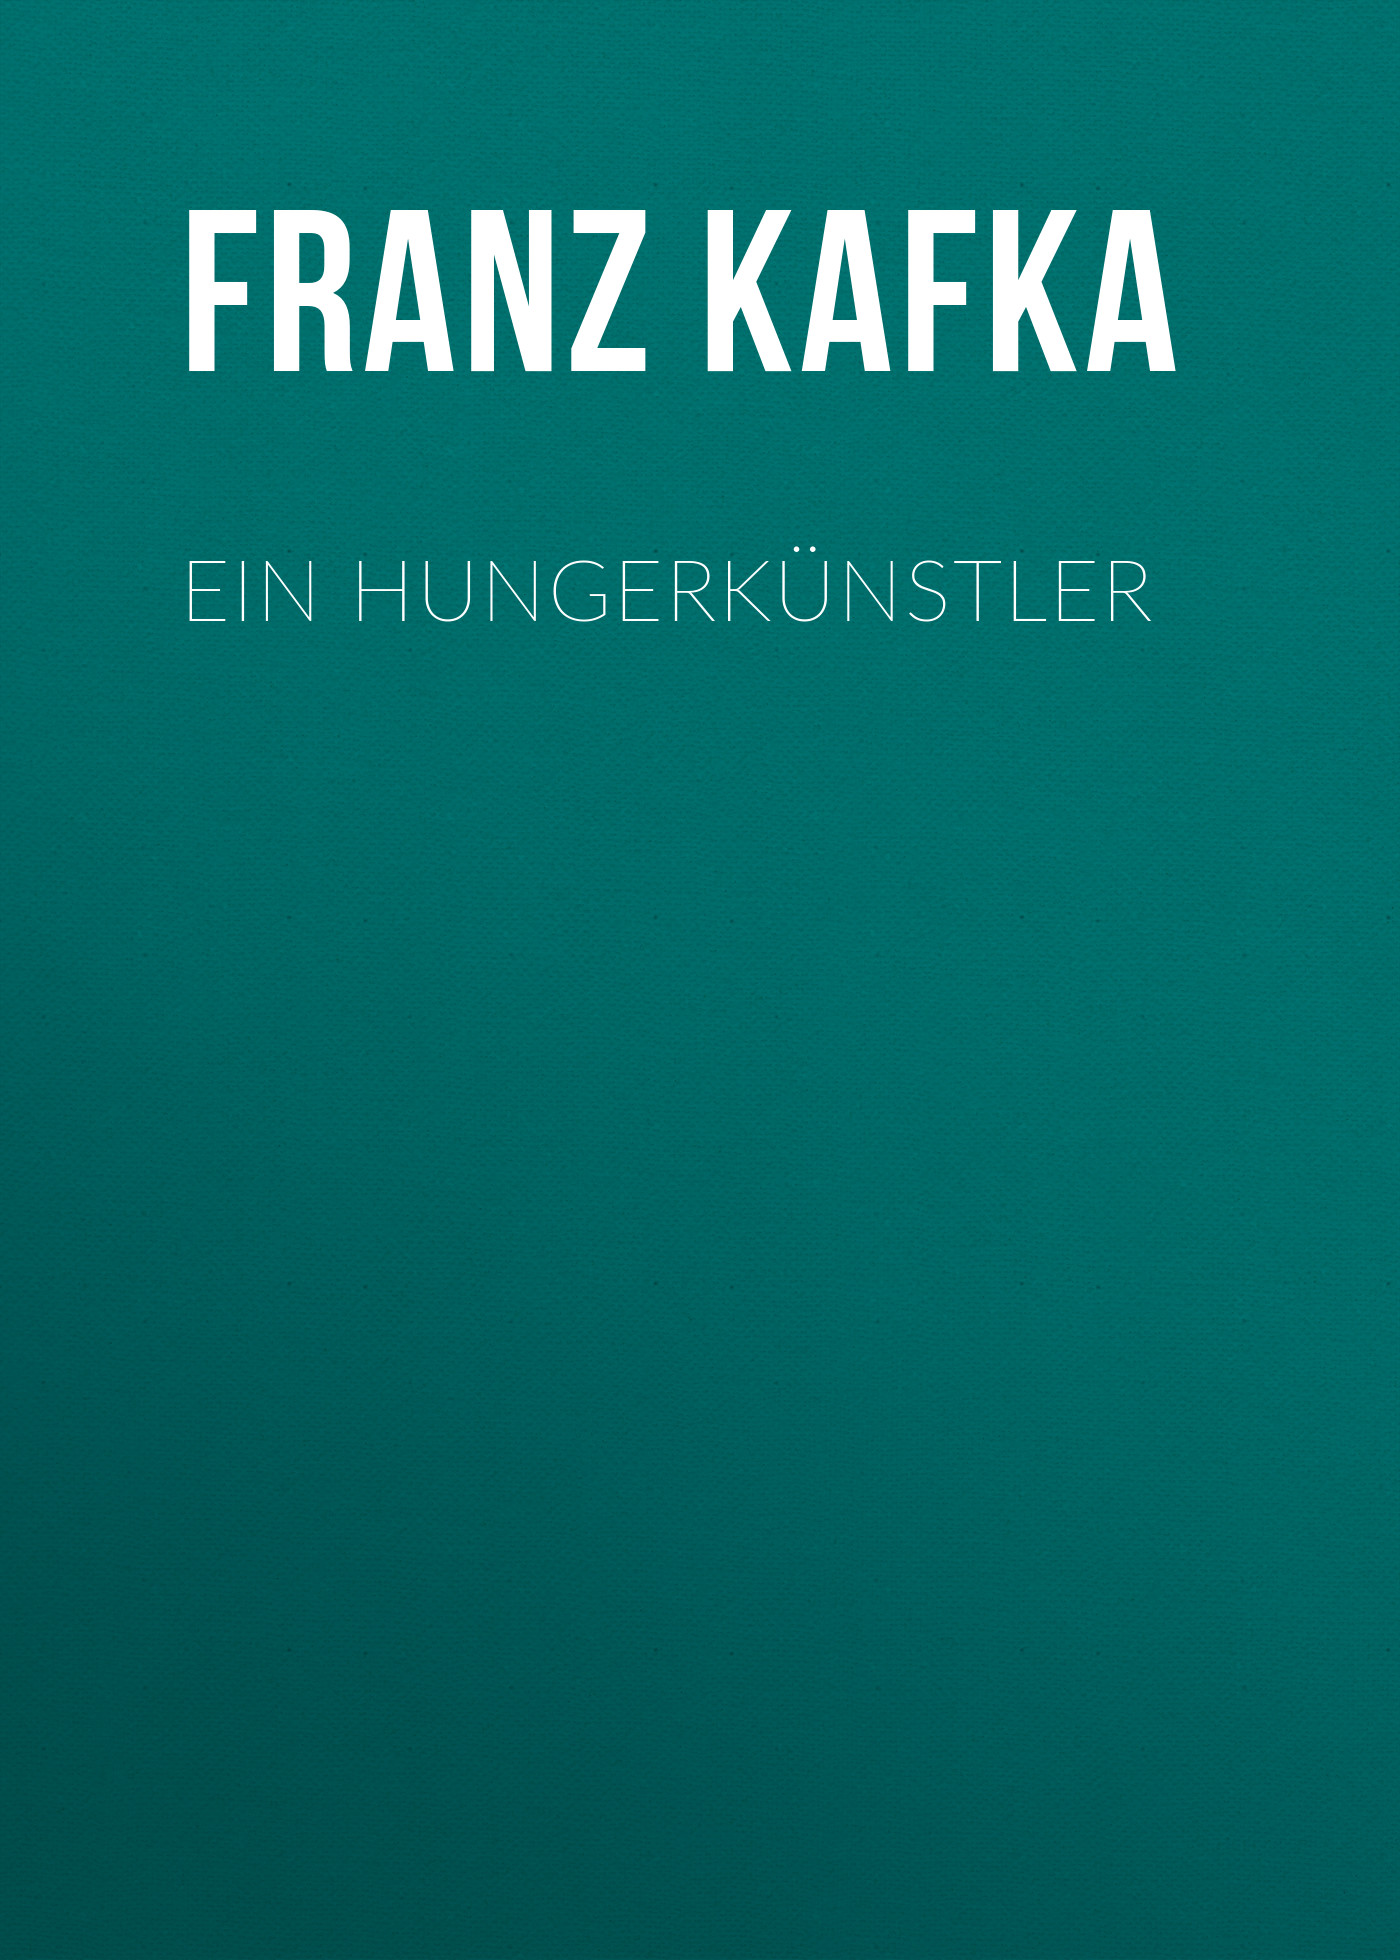 Книга Ein Hungerkünstler из серии , созданная Franz Kafka, может относится к жанру Зарубежная классика. Стоимость электронной книги Ein Hungerkünstler с идентификатором 48631780 составляет 0 руб.